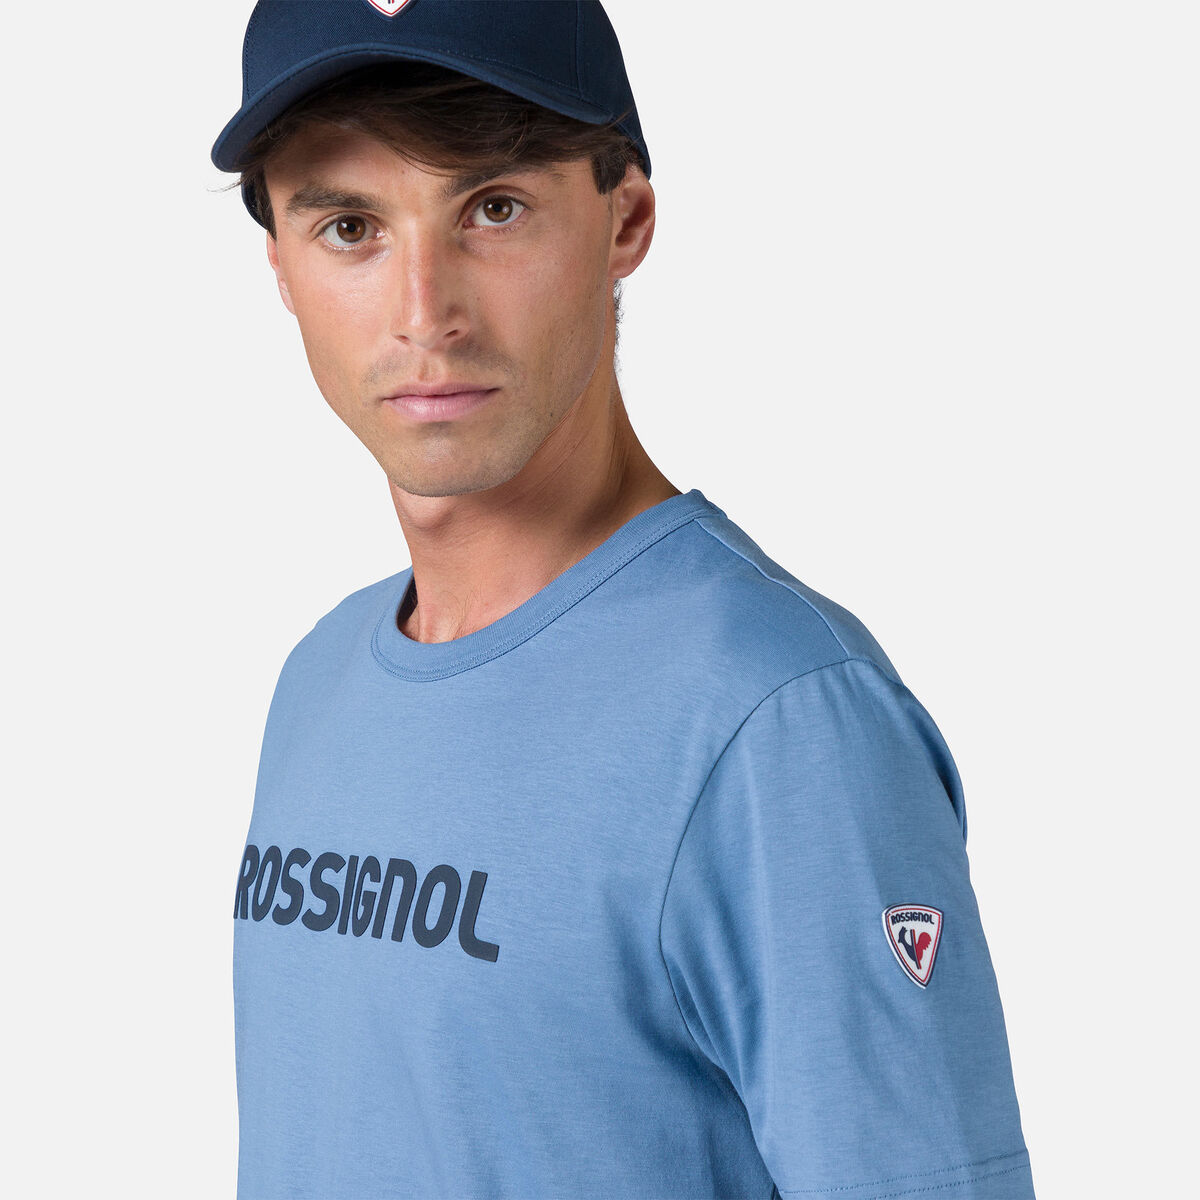 Rossignol Camiseta Rossignol para hombre blue